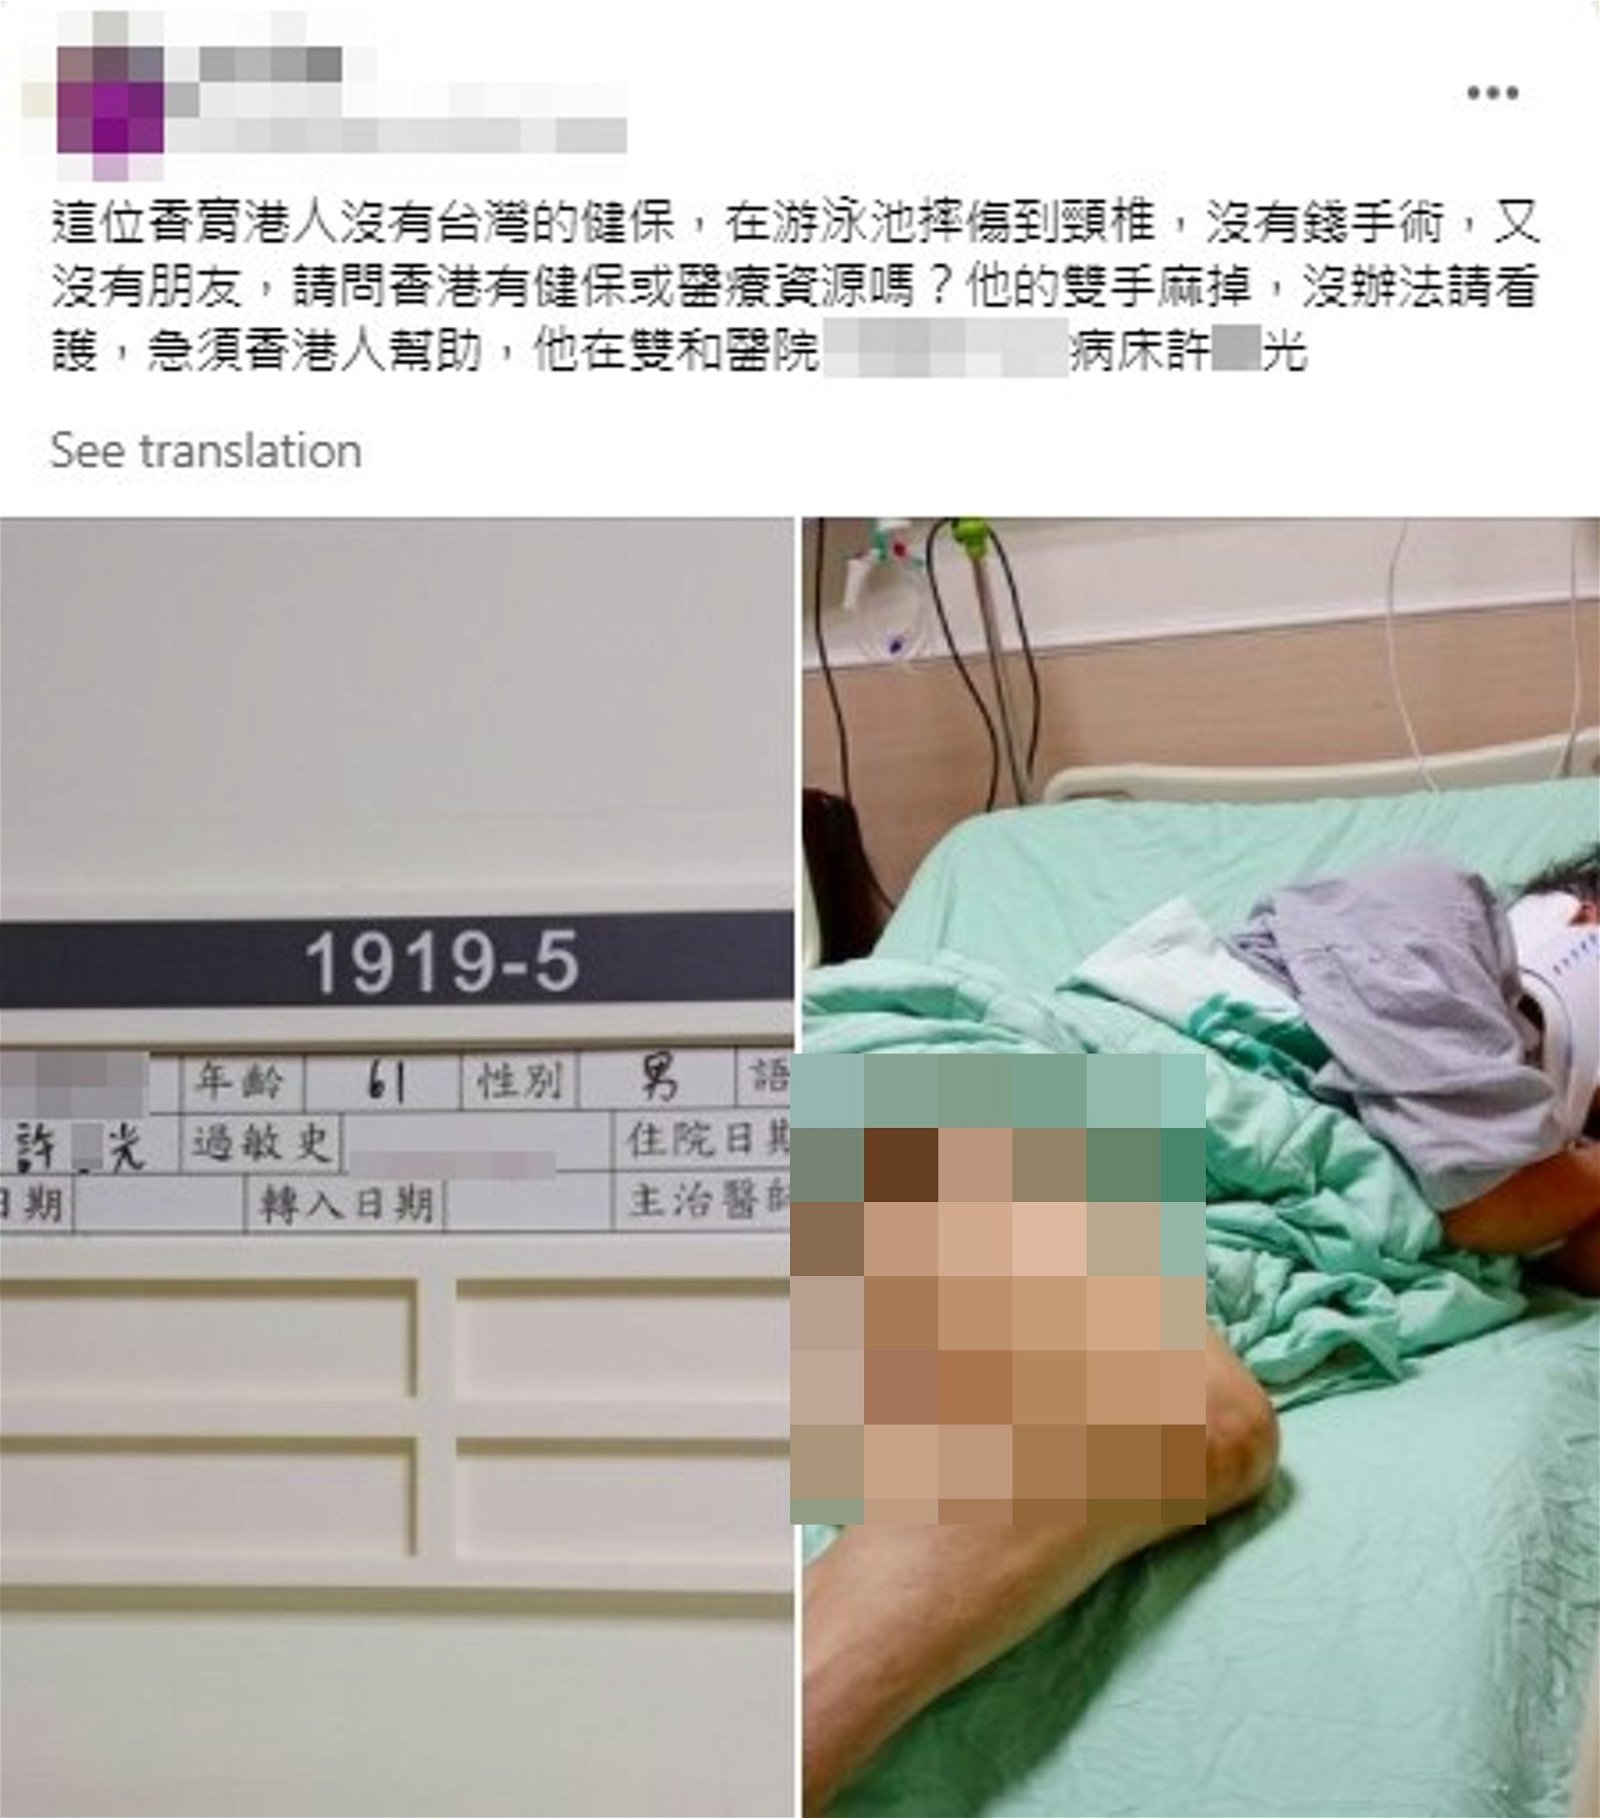 网上传出一位居台的香港人因不慎跌伤，却因为没有健保卡无法支付医药费。